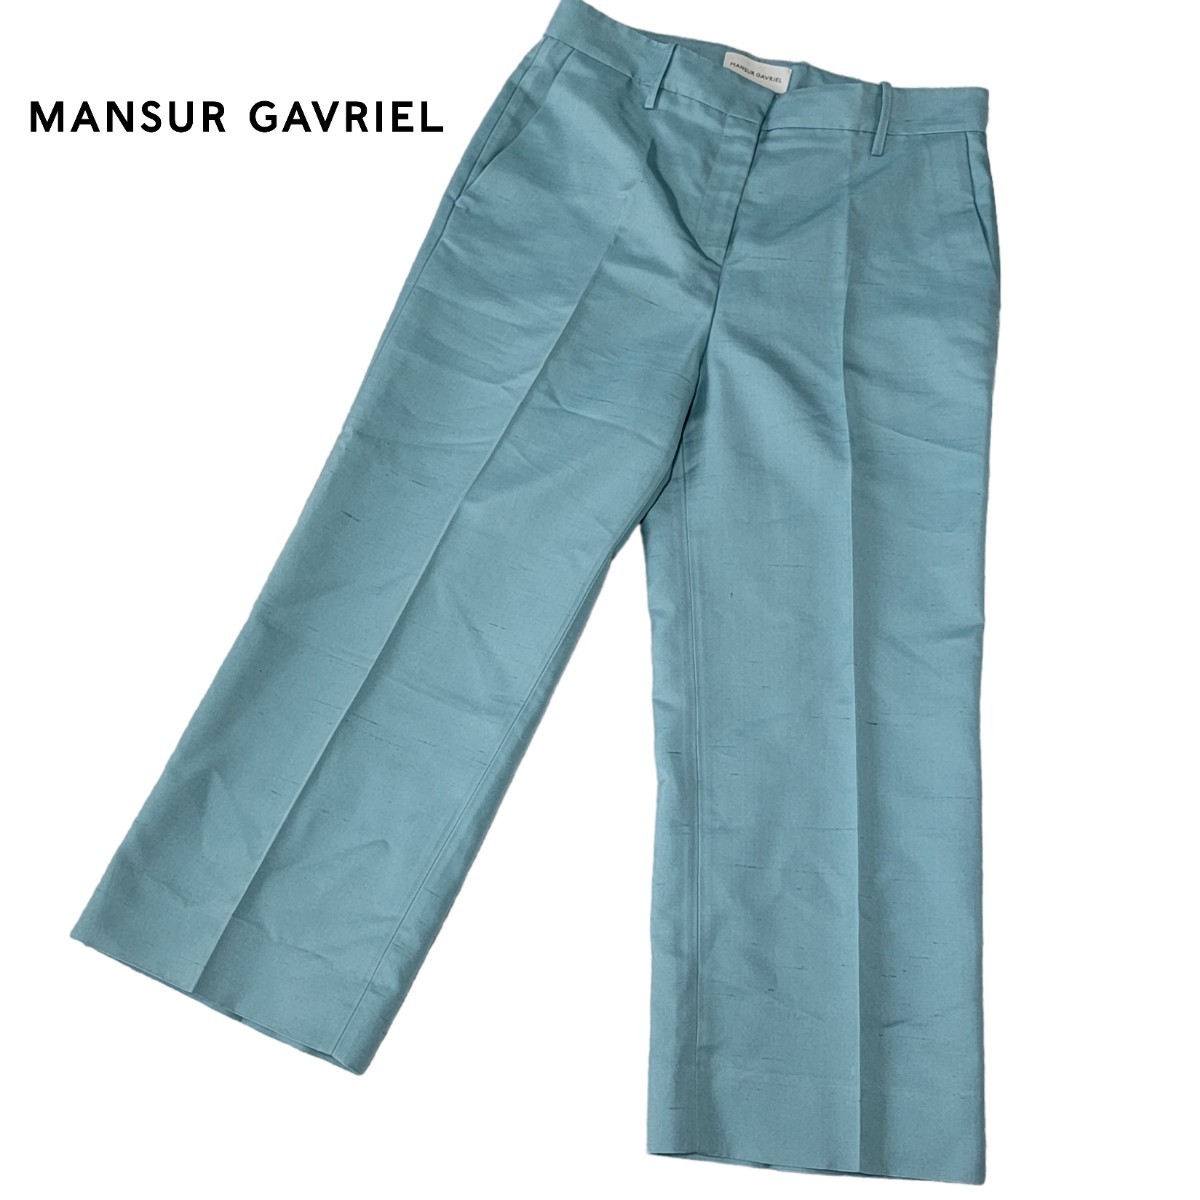 【極美品】イタリア製 マンサーガブリエル MANSUR GAVRIEL シルク100% ワイドパンツ 40ティファニーブルー色